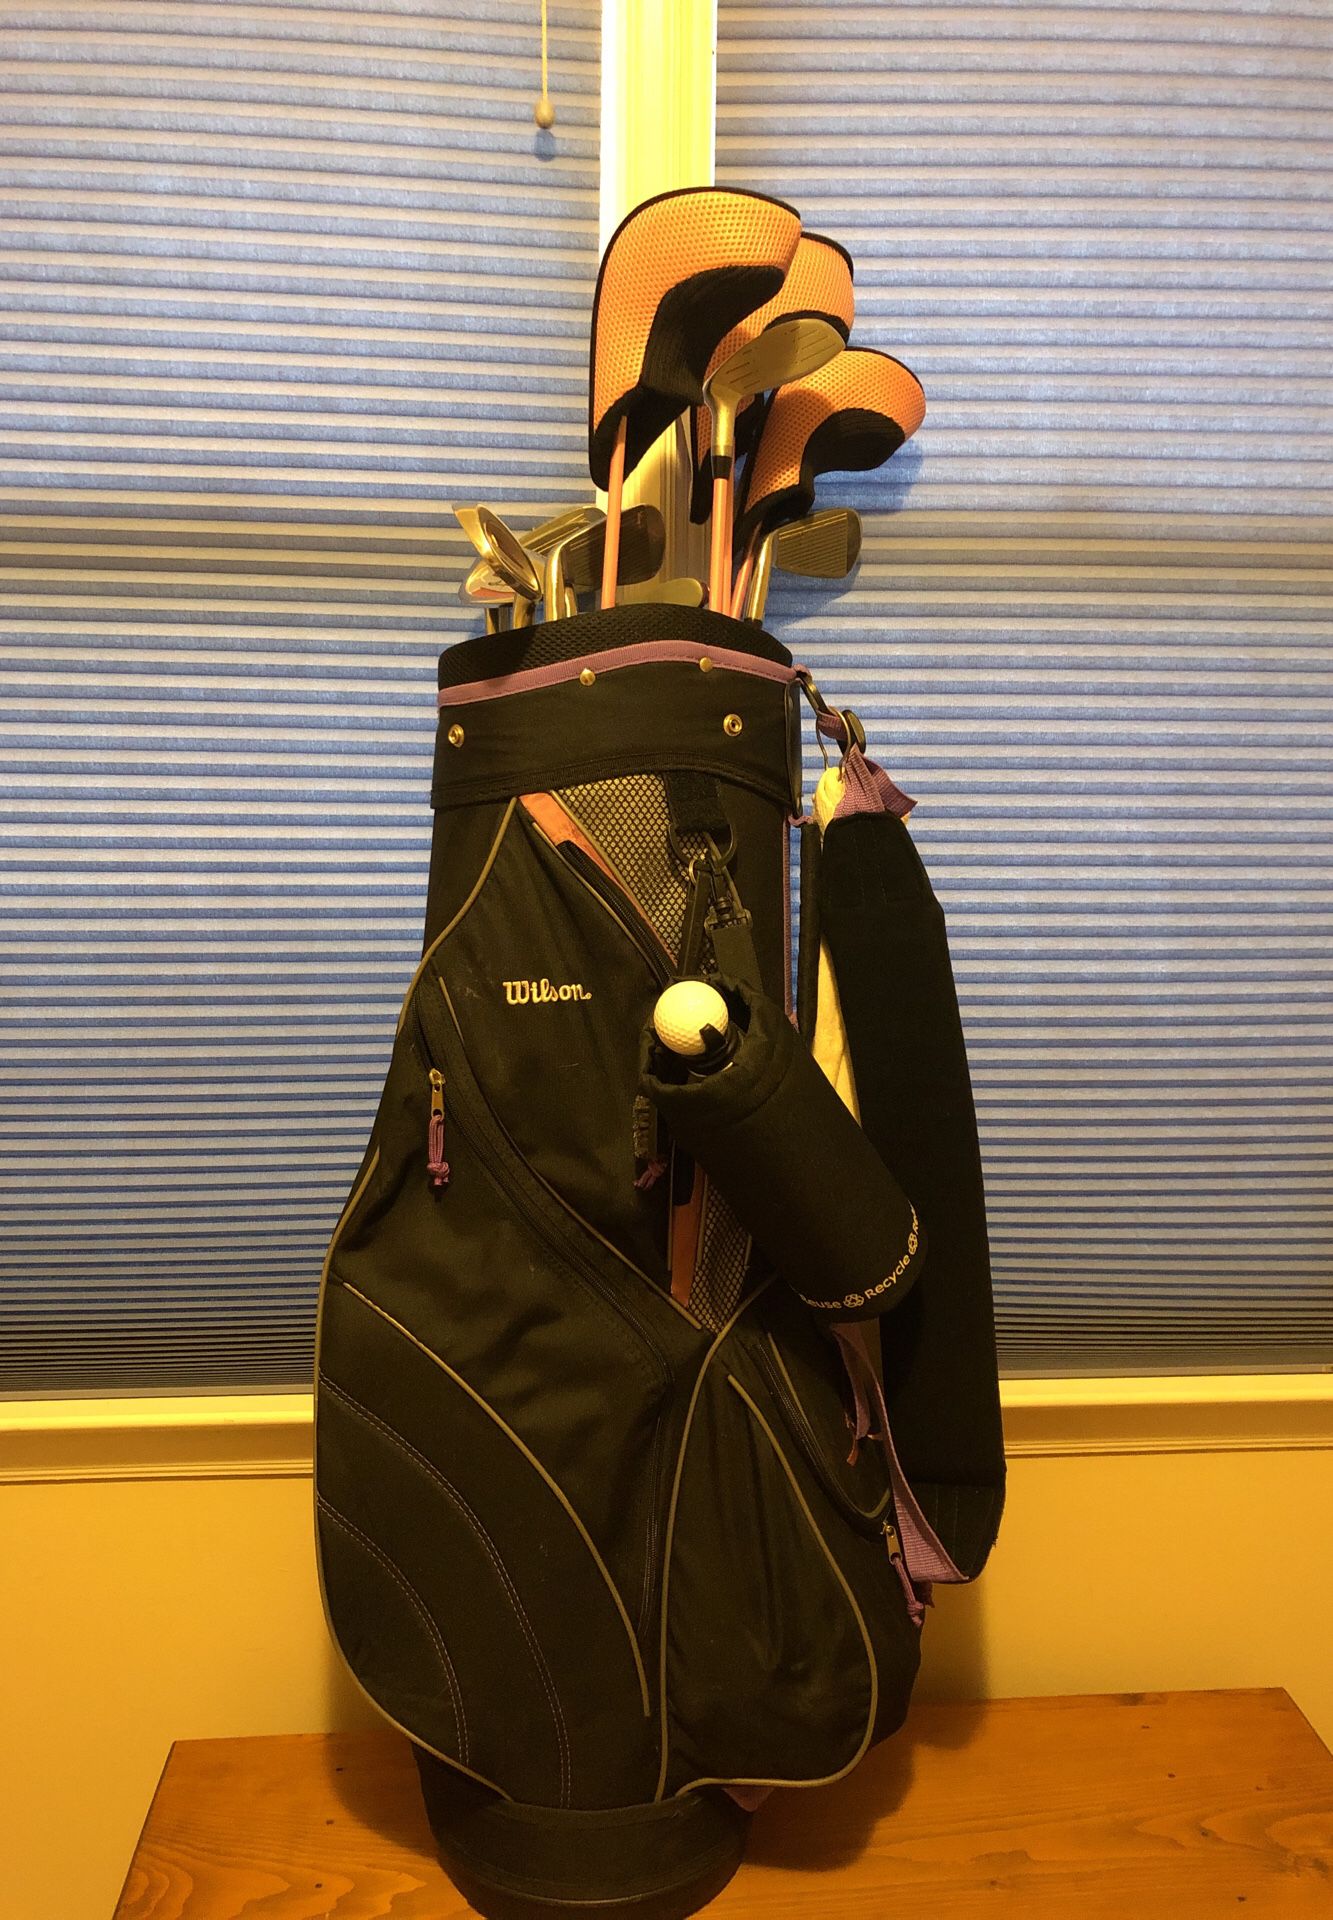 Wilson Slope women’s golf clubs full set